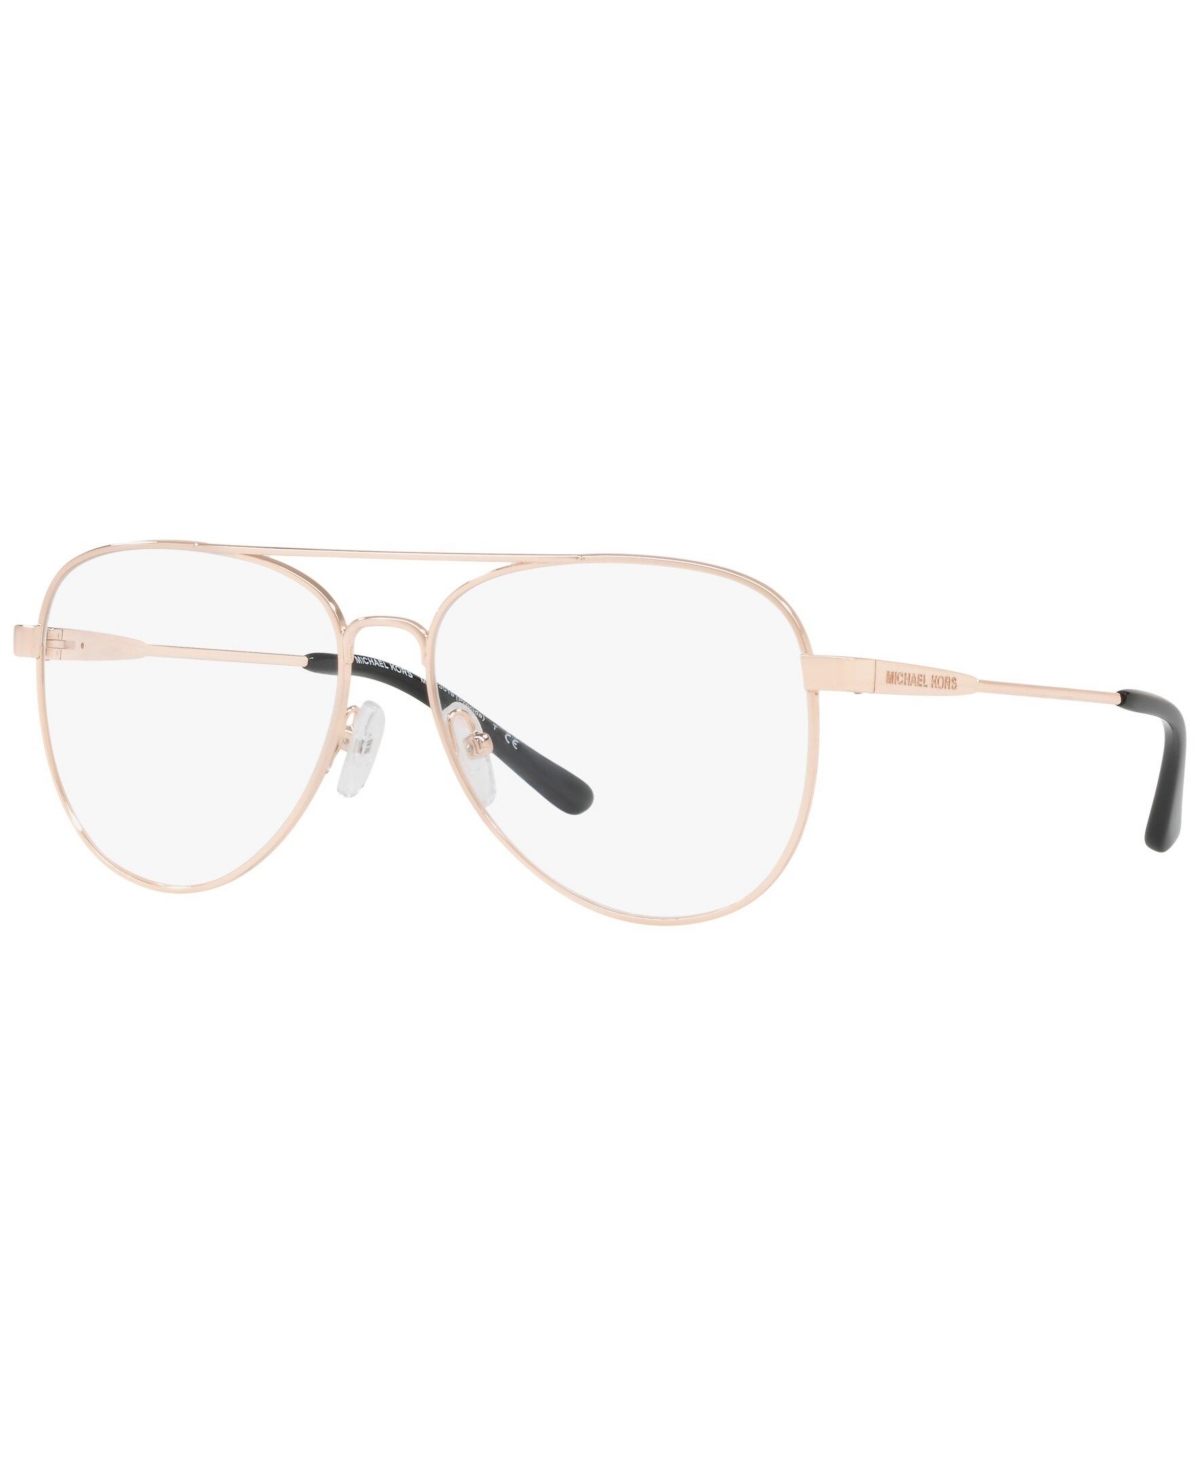 MK3019 Women's Pilot Eyeglasses - Rose Gold